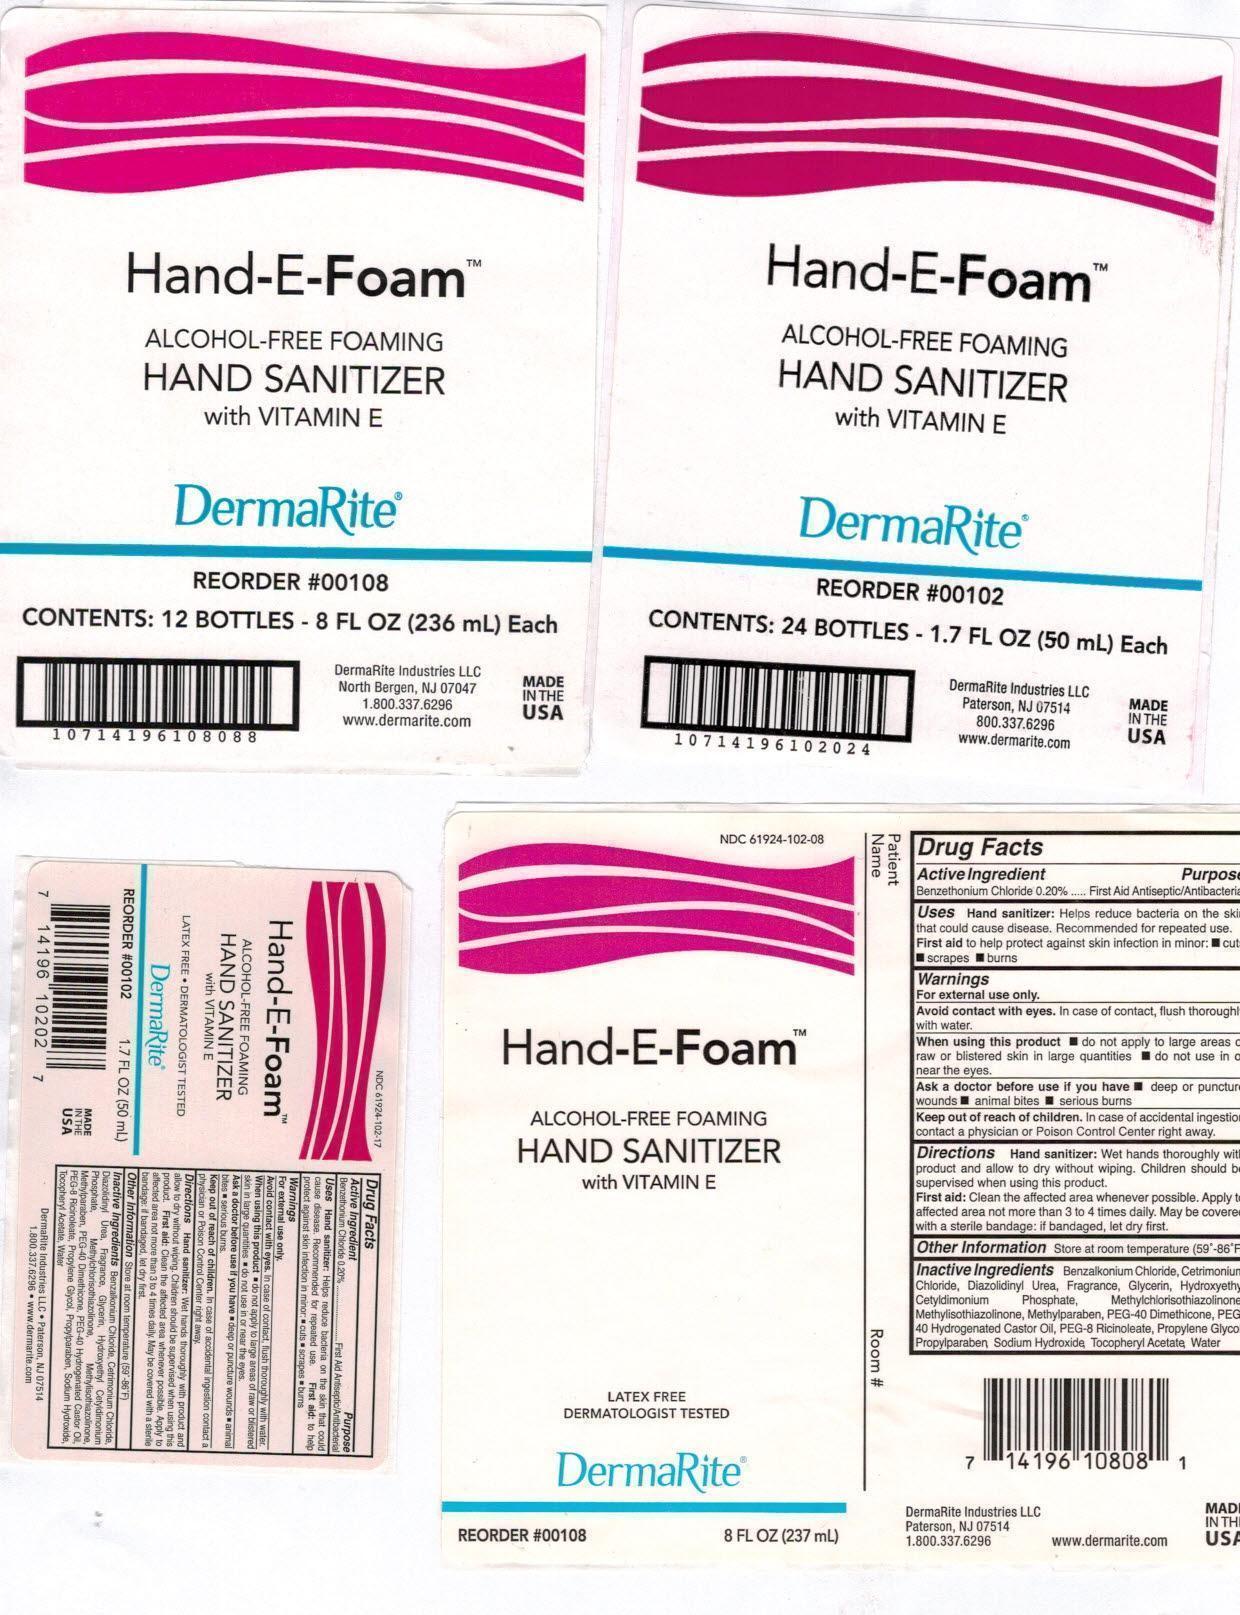 HandEFoam 1pt7 and 8oz bottle and case labels